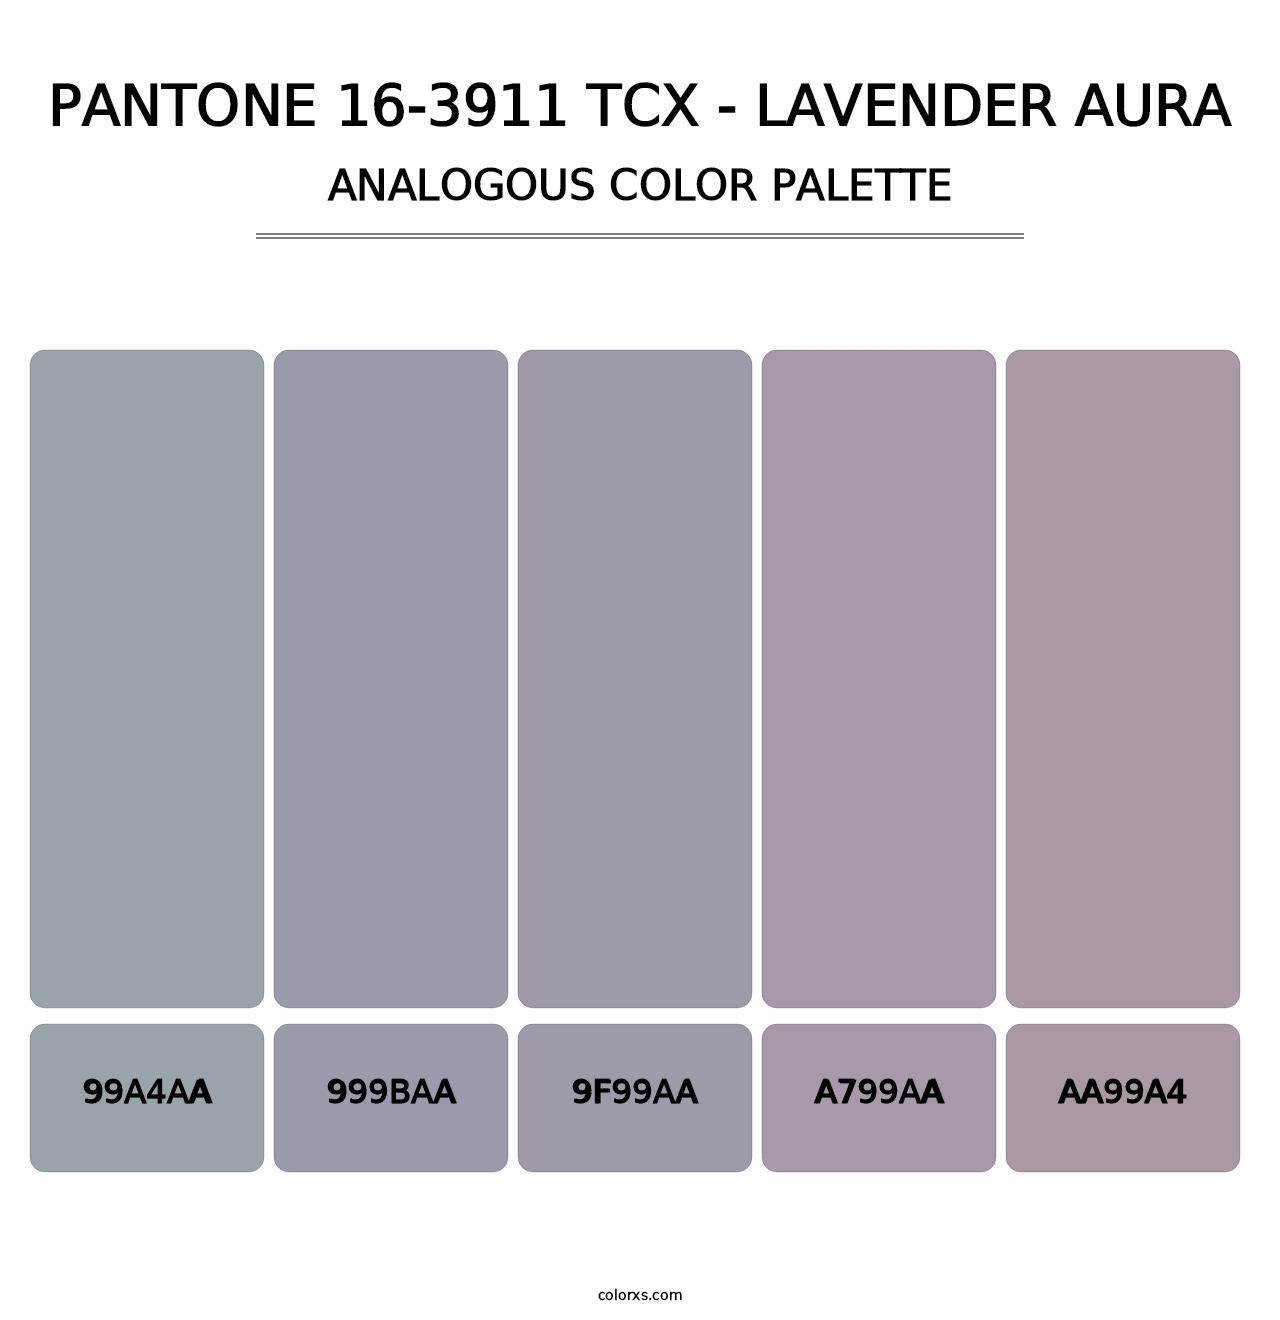 PANTONE 16-3911 TCX - Lavender Aura - Analogous Color Palette